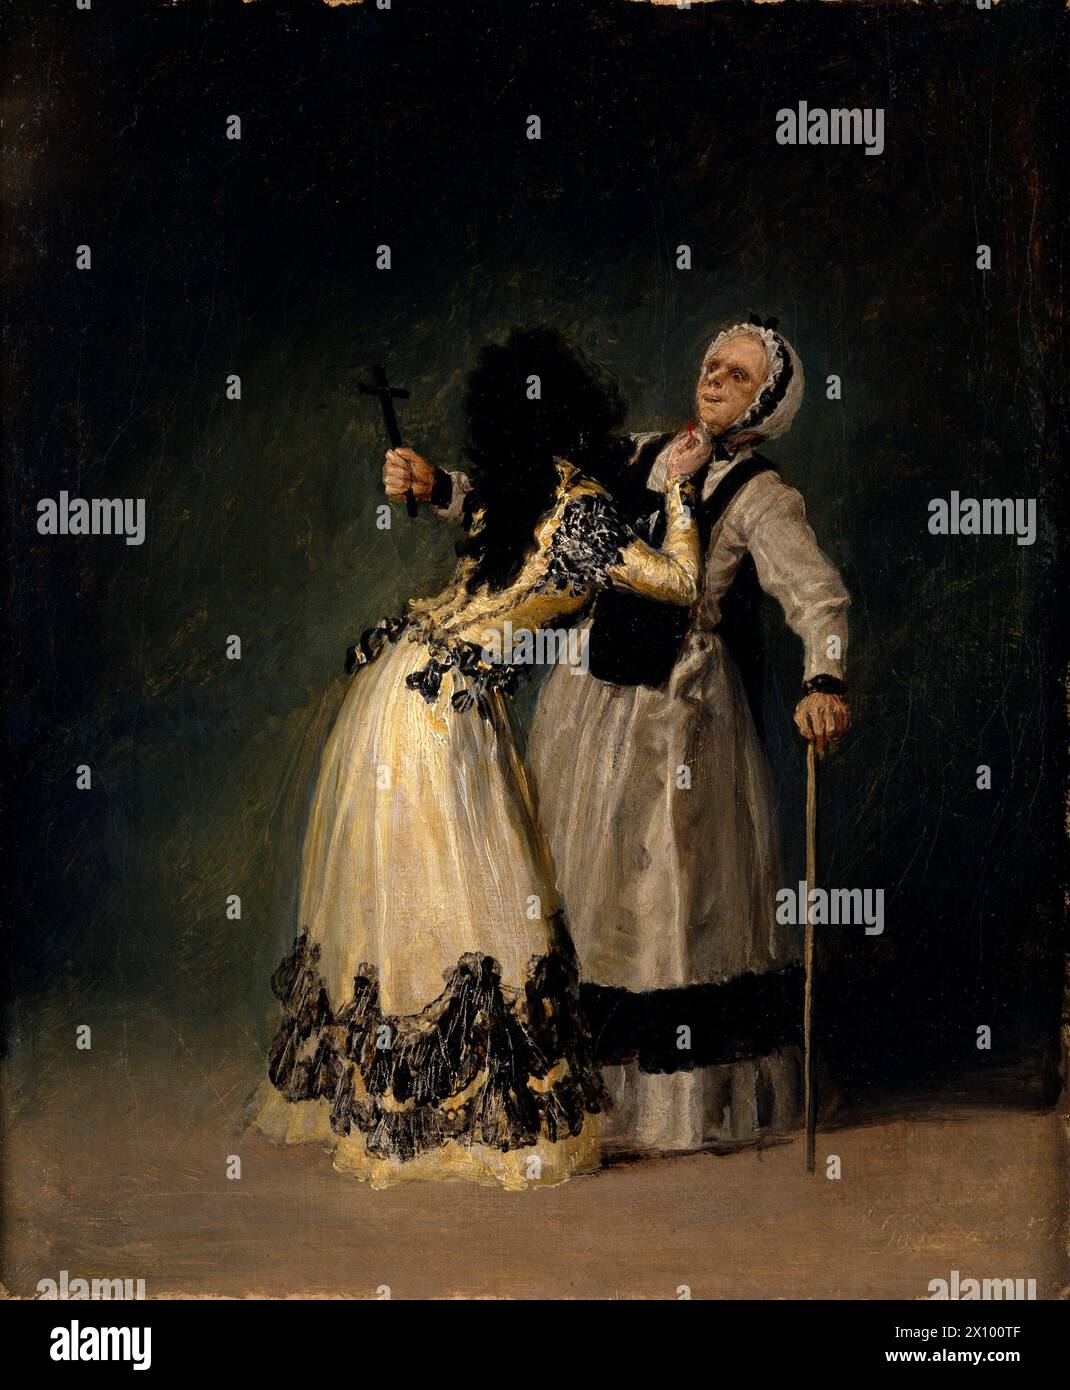 La Duchessa di Alba e la Beata (o Duchessa di Alba e la Pia donna; spagnolo: La duquesa de Alba y su dueña o la Duquesa de Alba y la Beata) è un piccolo dipinto del 1795 olio su tela dell'artista spagnolo Francisco Goya. Foto Stock